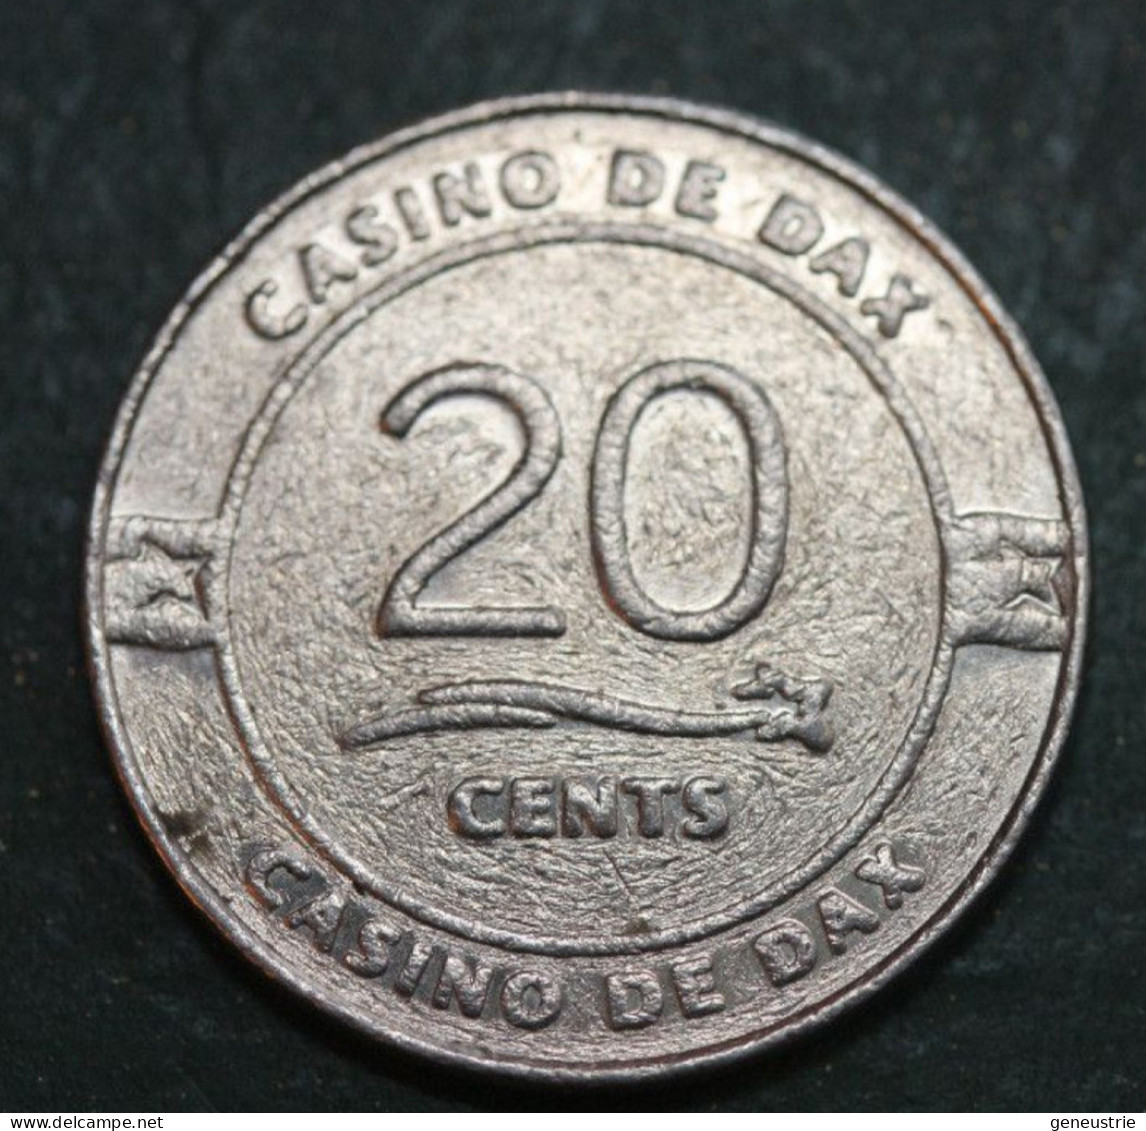 Jeton De 20 Euro Cents Du Casino De Dax - French Chips Casino Token - Casino